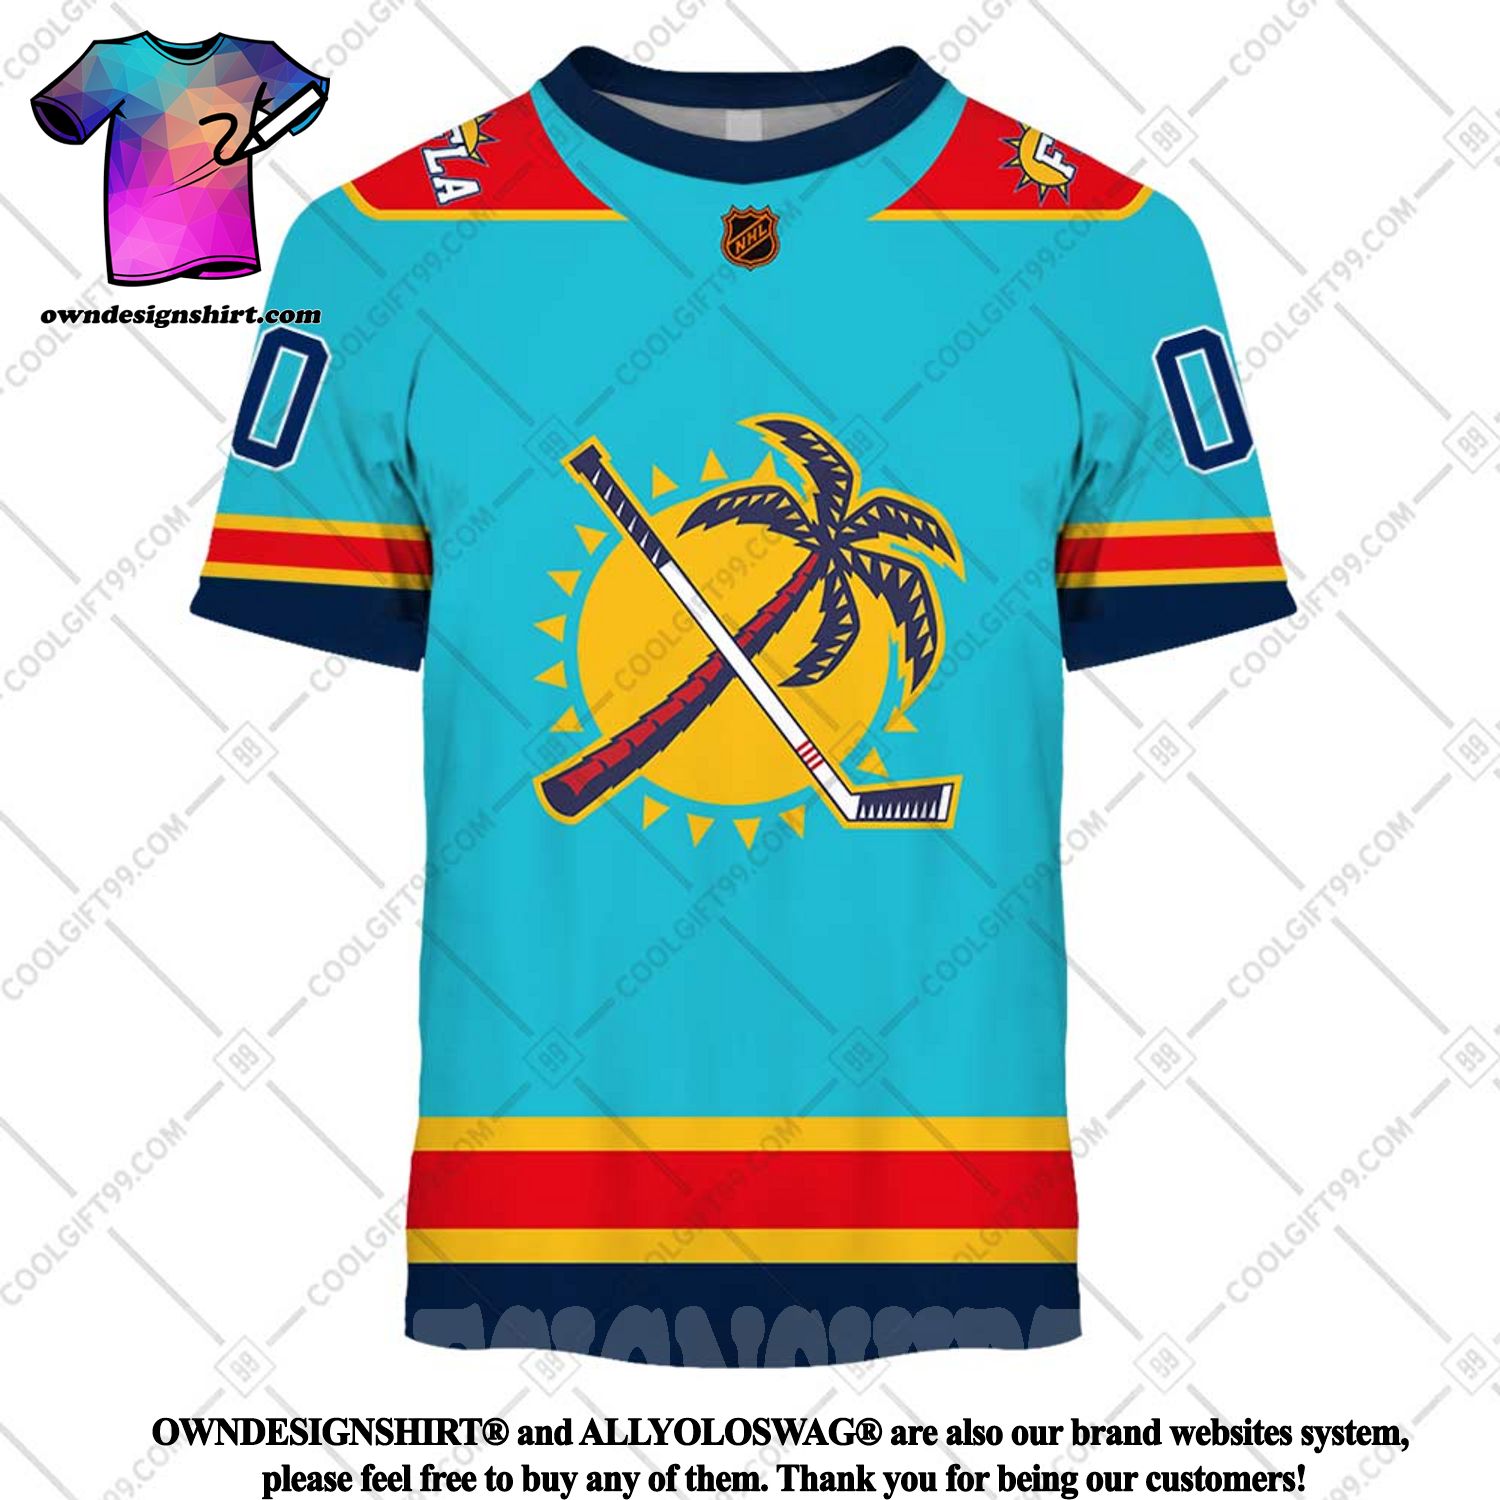 Florida Panthers Retro NHL 3D Hawaiian Shirt And Shorts For Men